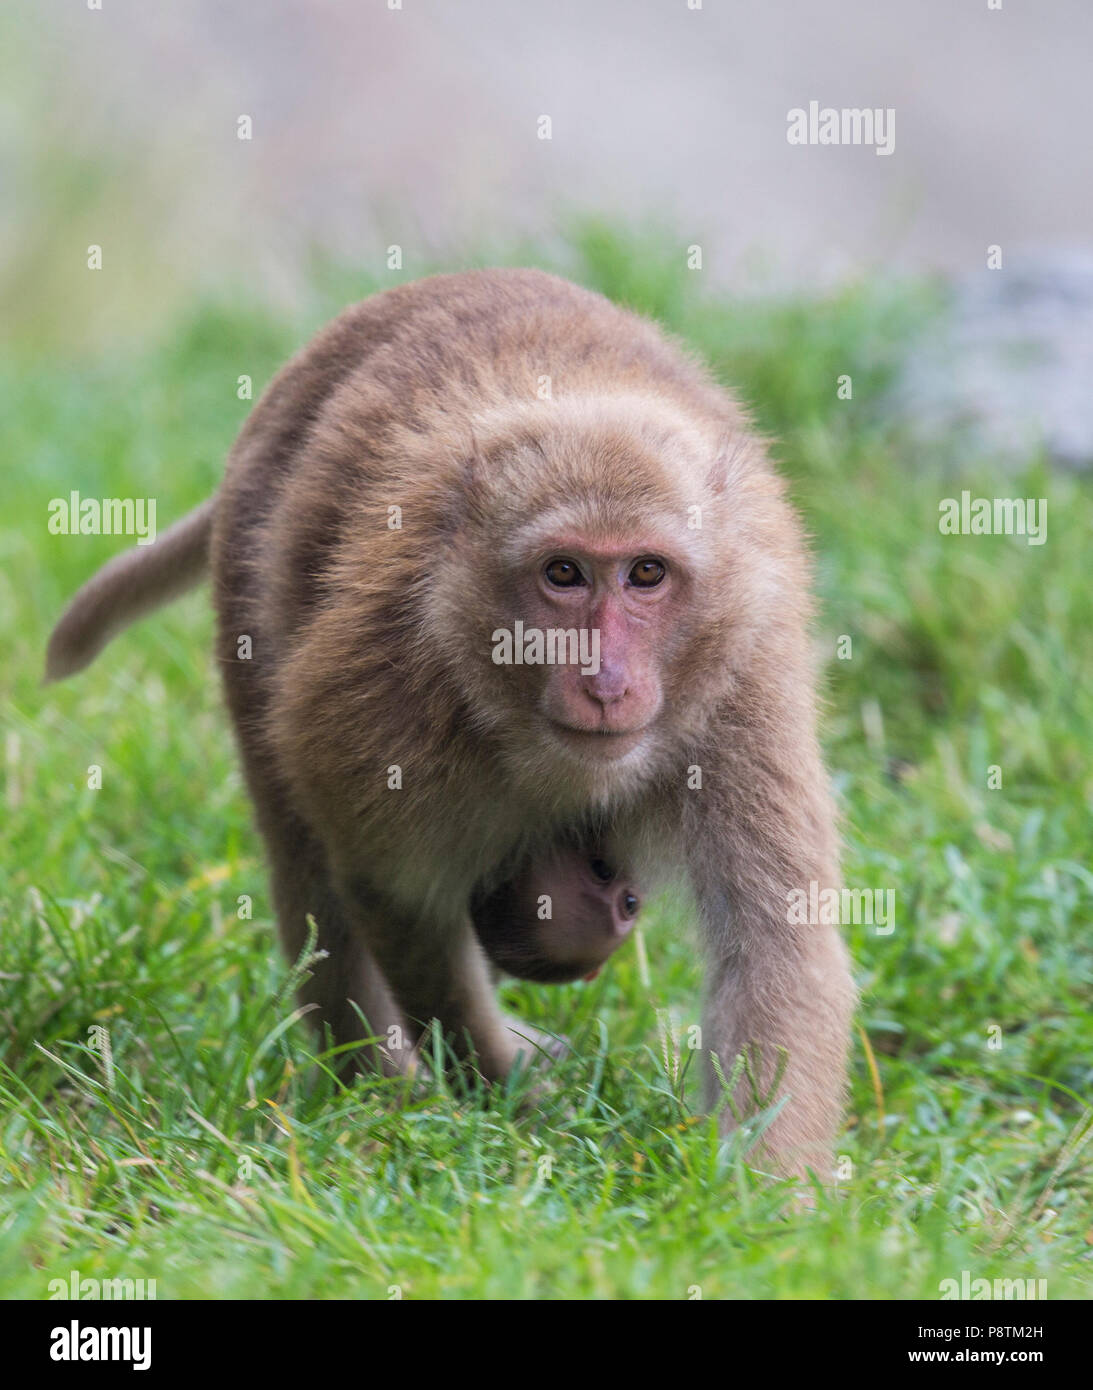 Rhesus Macaque or Macaca mulatta in north bengal hills, India Stock Photo